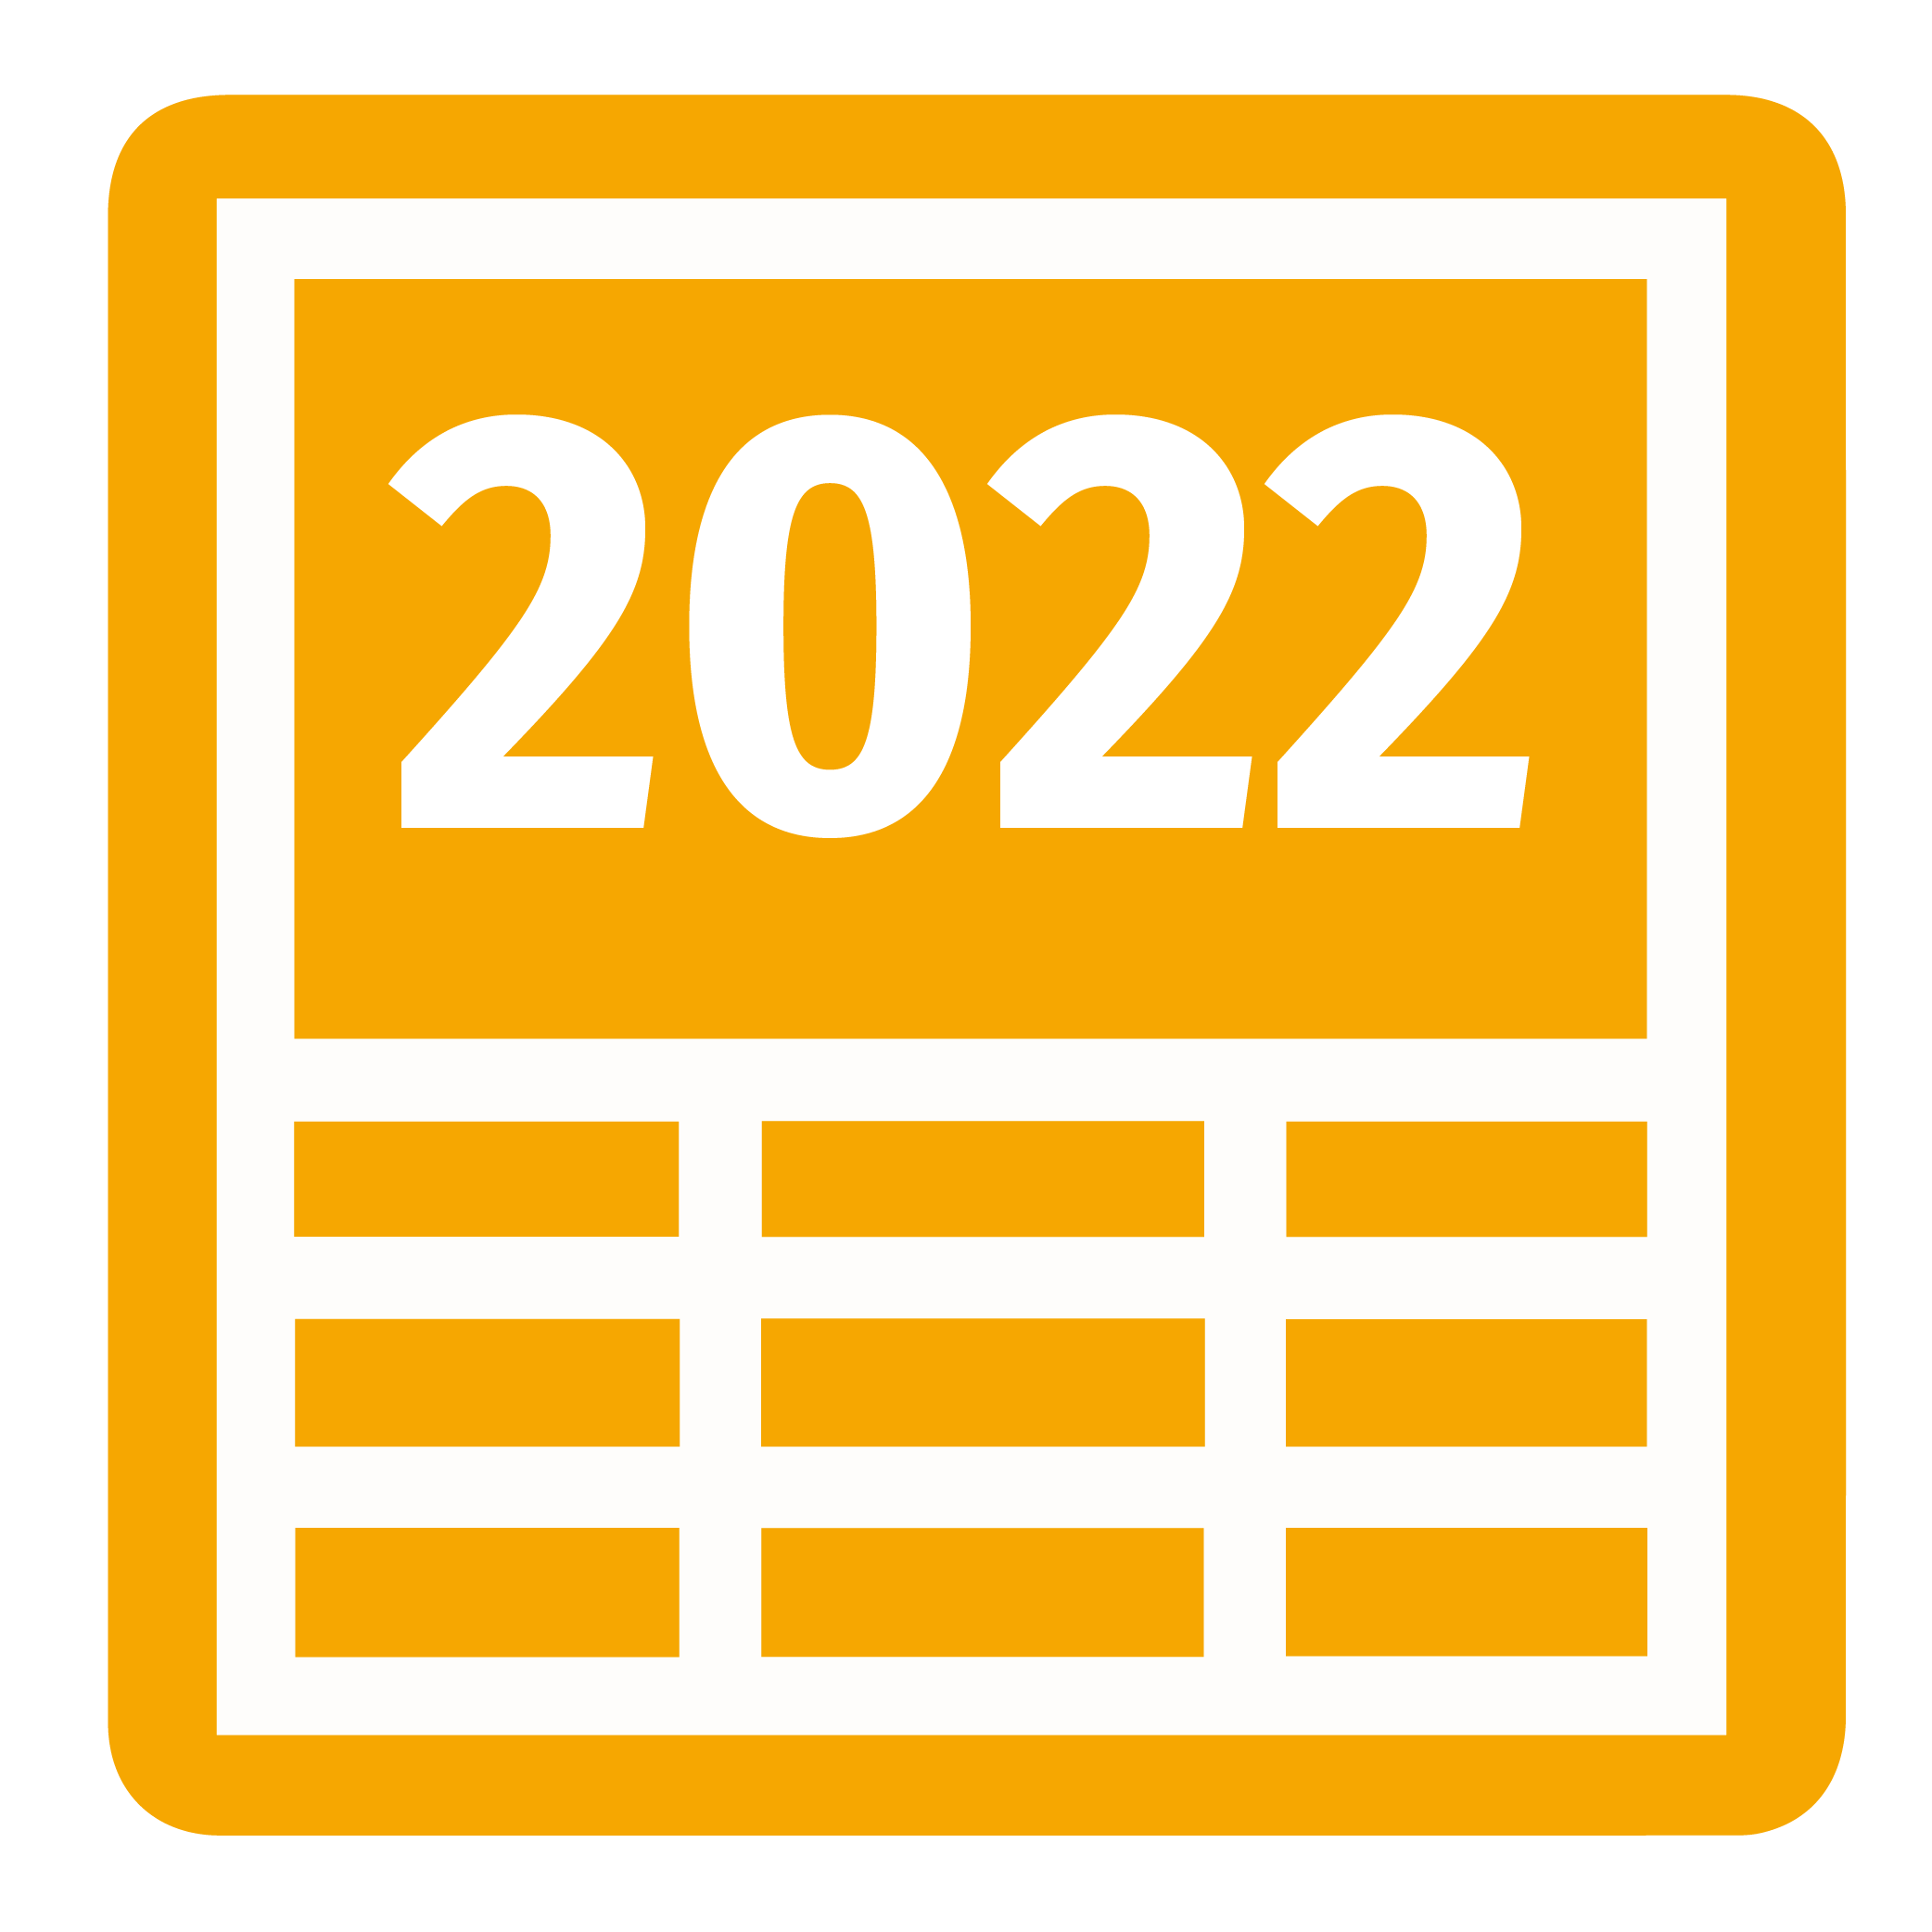 LTU liikevaihto ja henkilöstö vuosi 2022